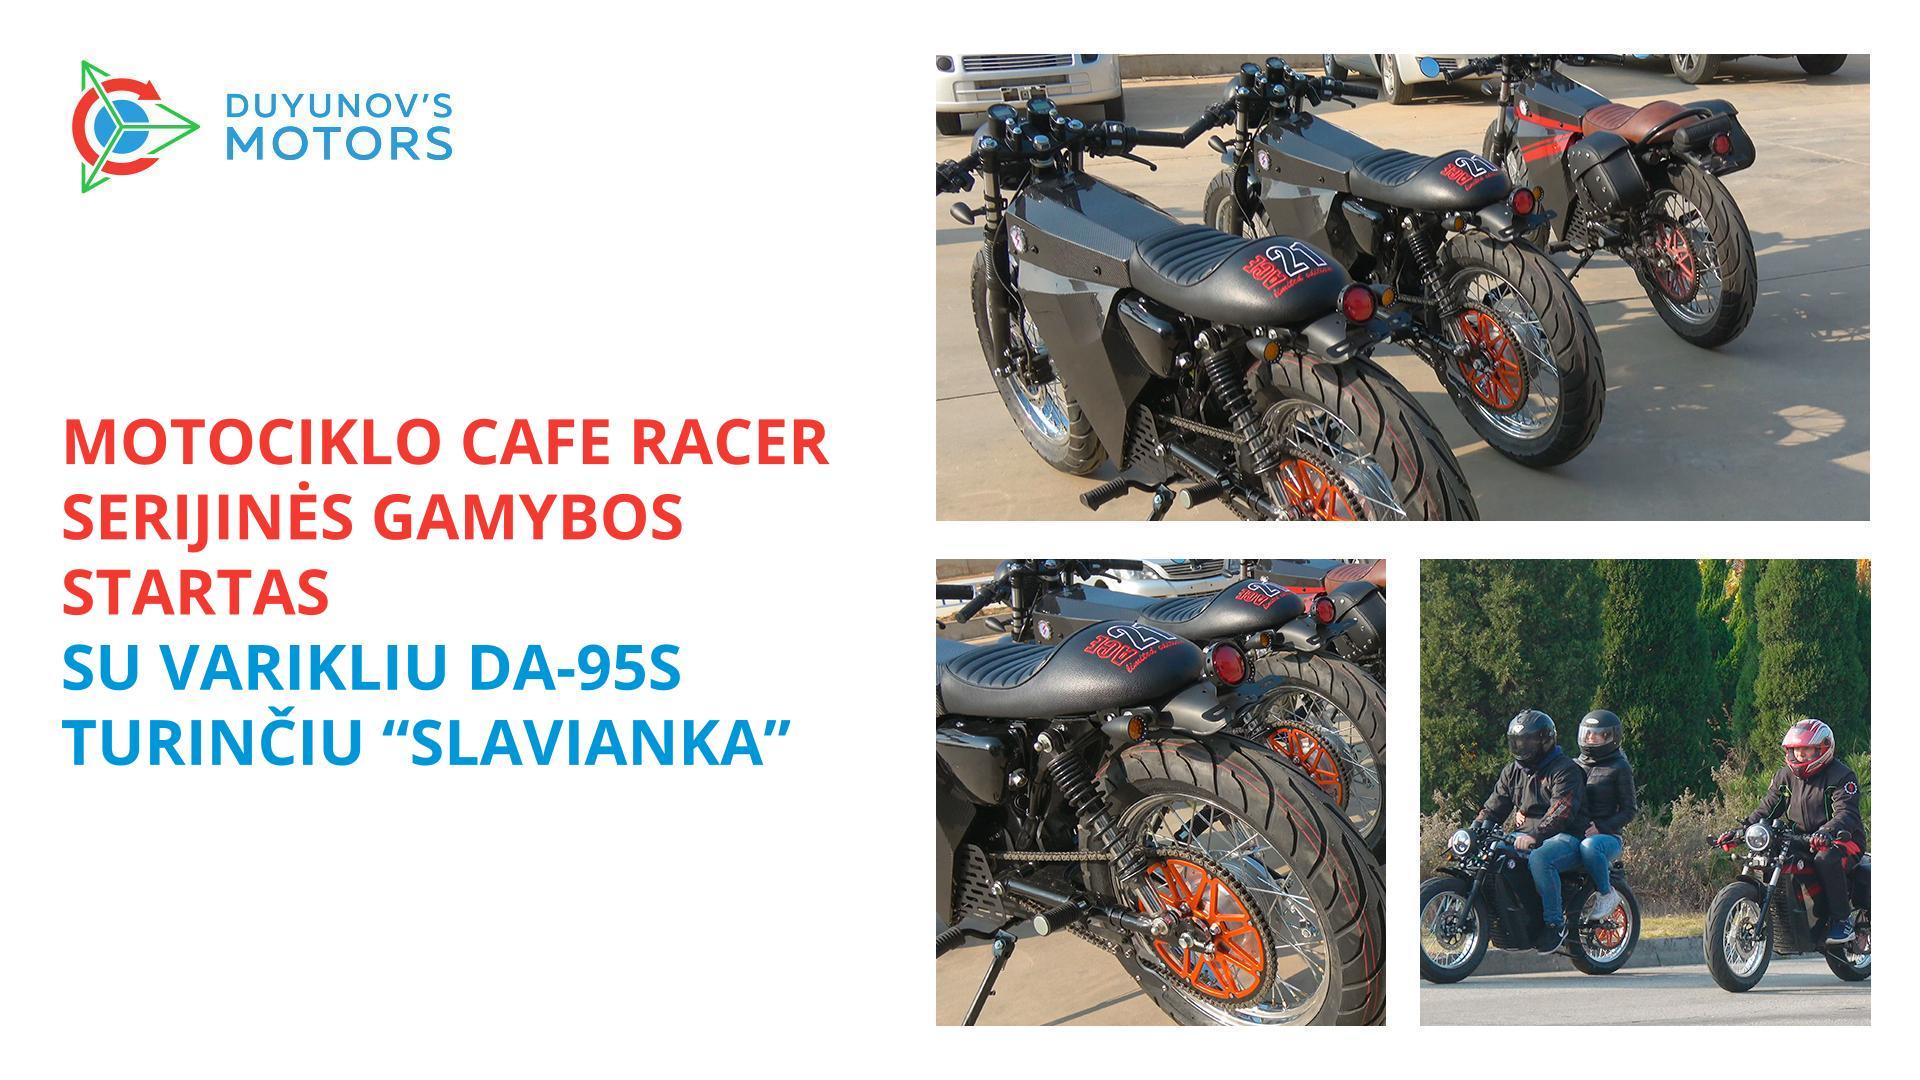 Motociklo Cafe racer, su varikliu DA–95S turinčiu „Slavianka“, serijinės gamybos startas